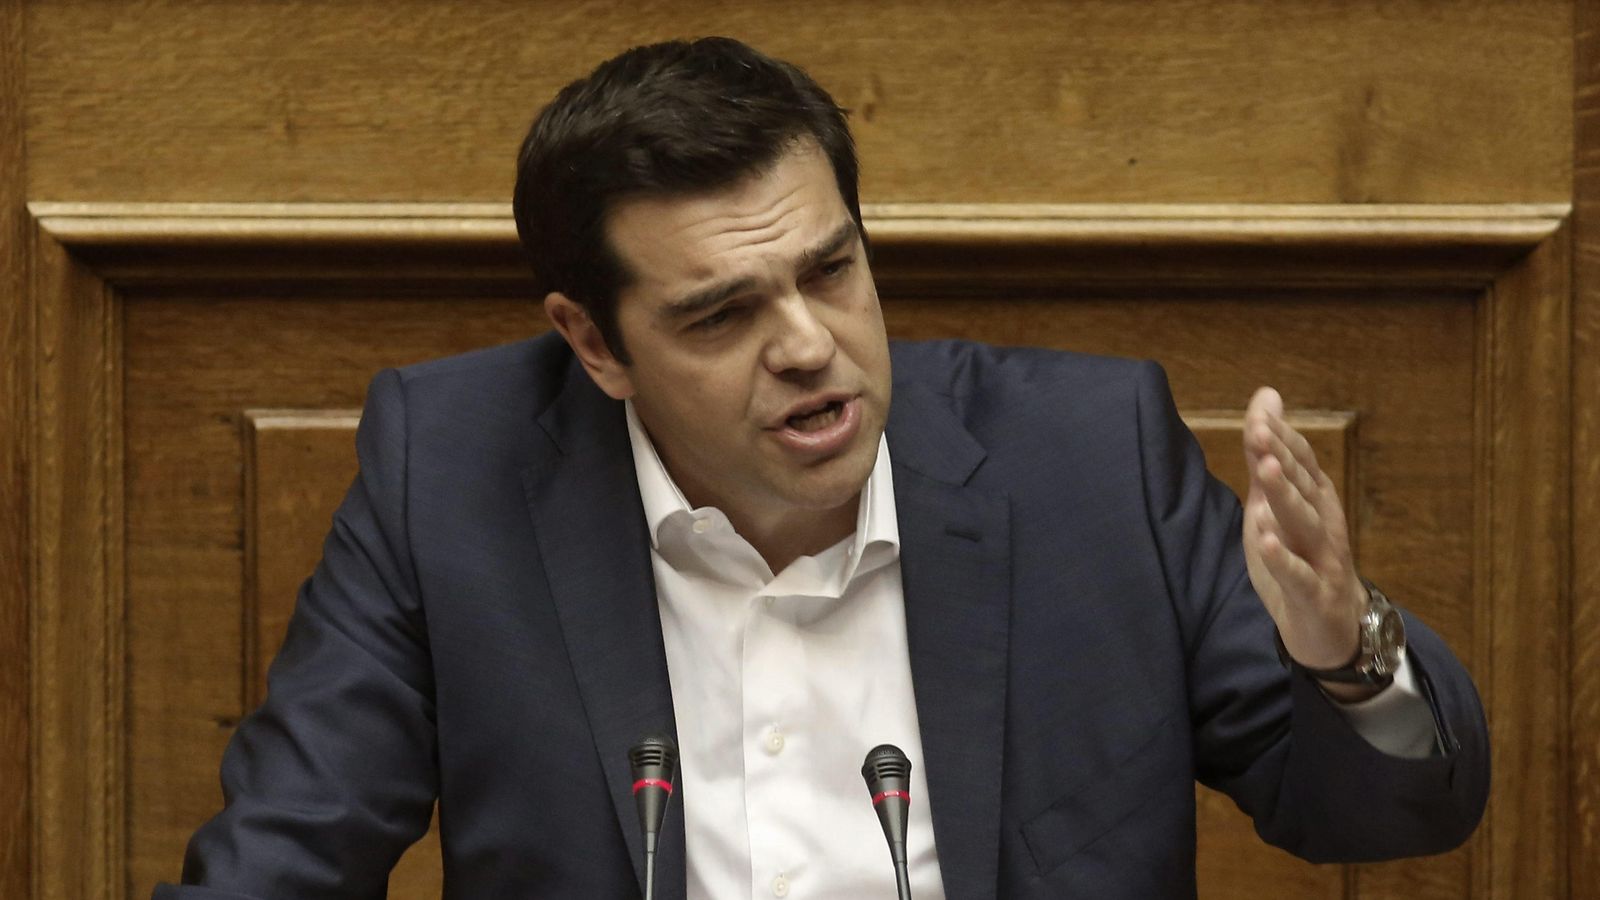 Foto: El primer ministro griego, Alexis Tsipras, pronuncia un discurso durante una sesión en el Parlamento de Atenas (EFE)